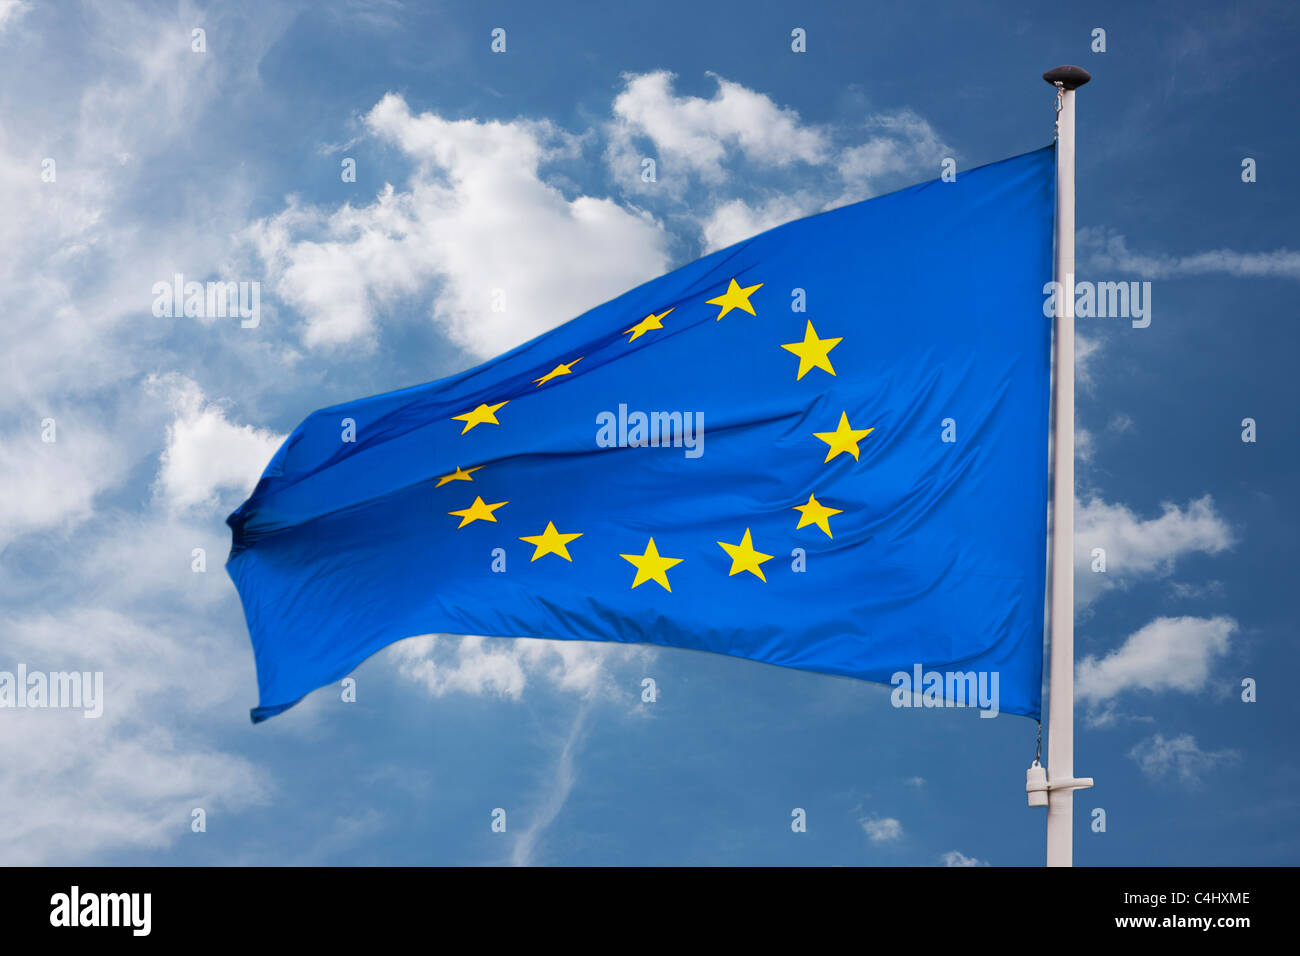 Detailansicht Flagge von der Europäischen Union | photo Détail du drapeau de l'Union européenne Banque D'Images